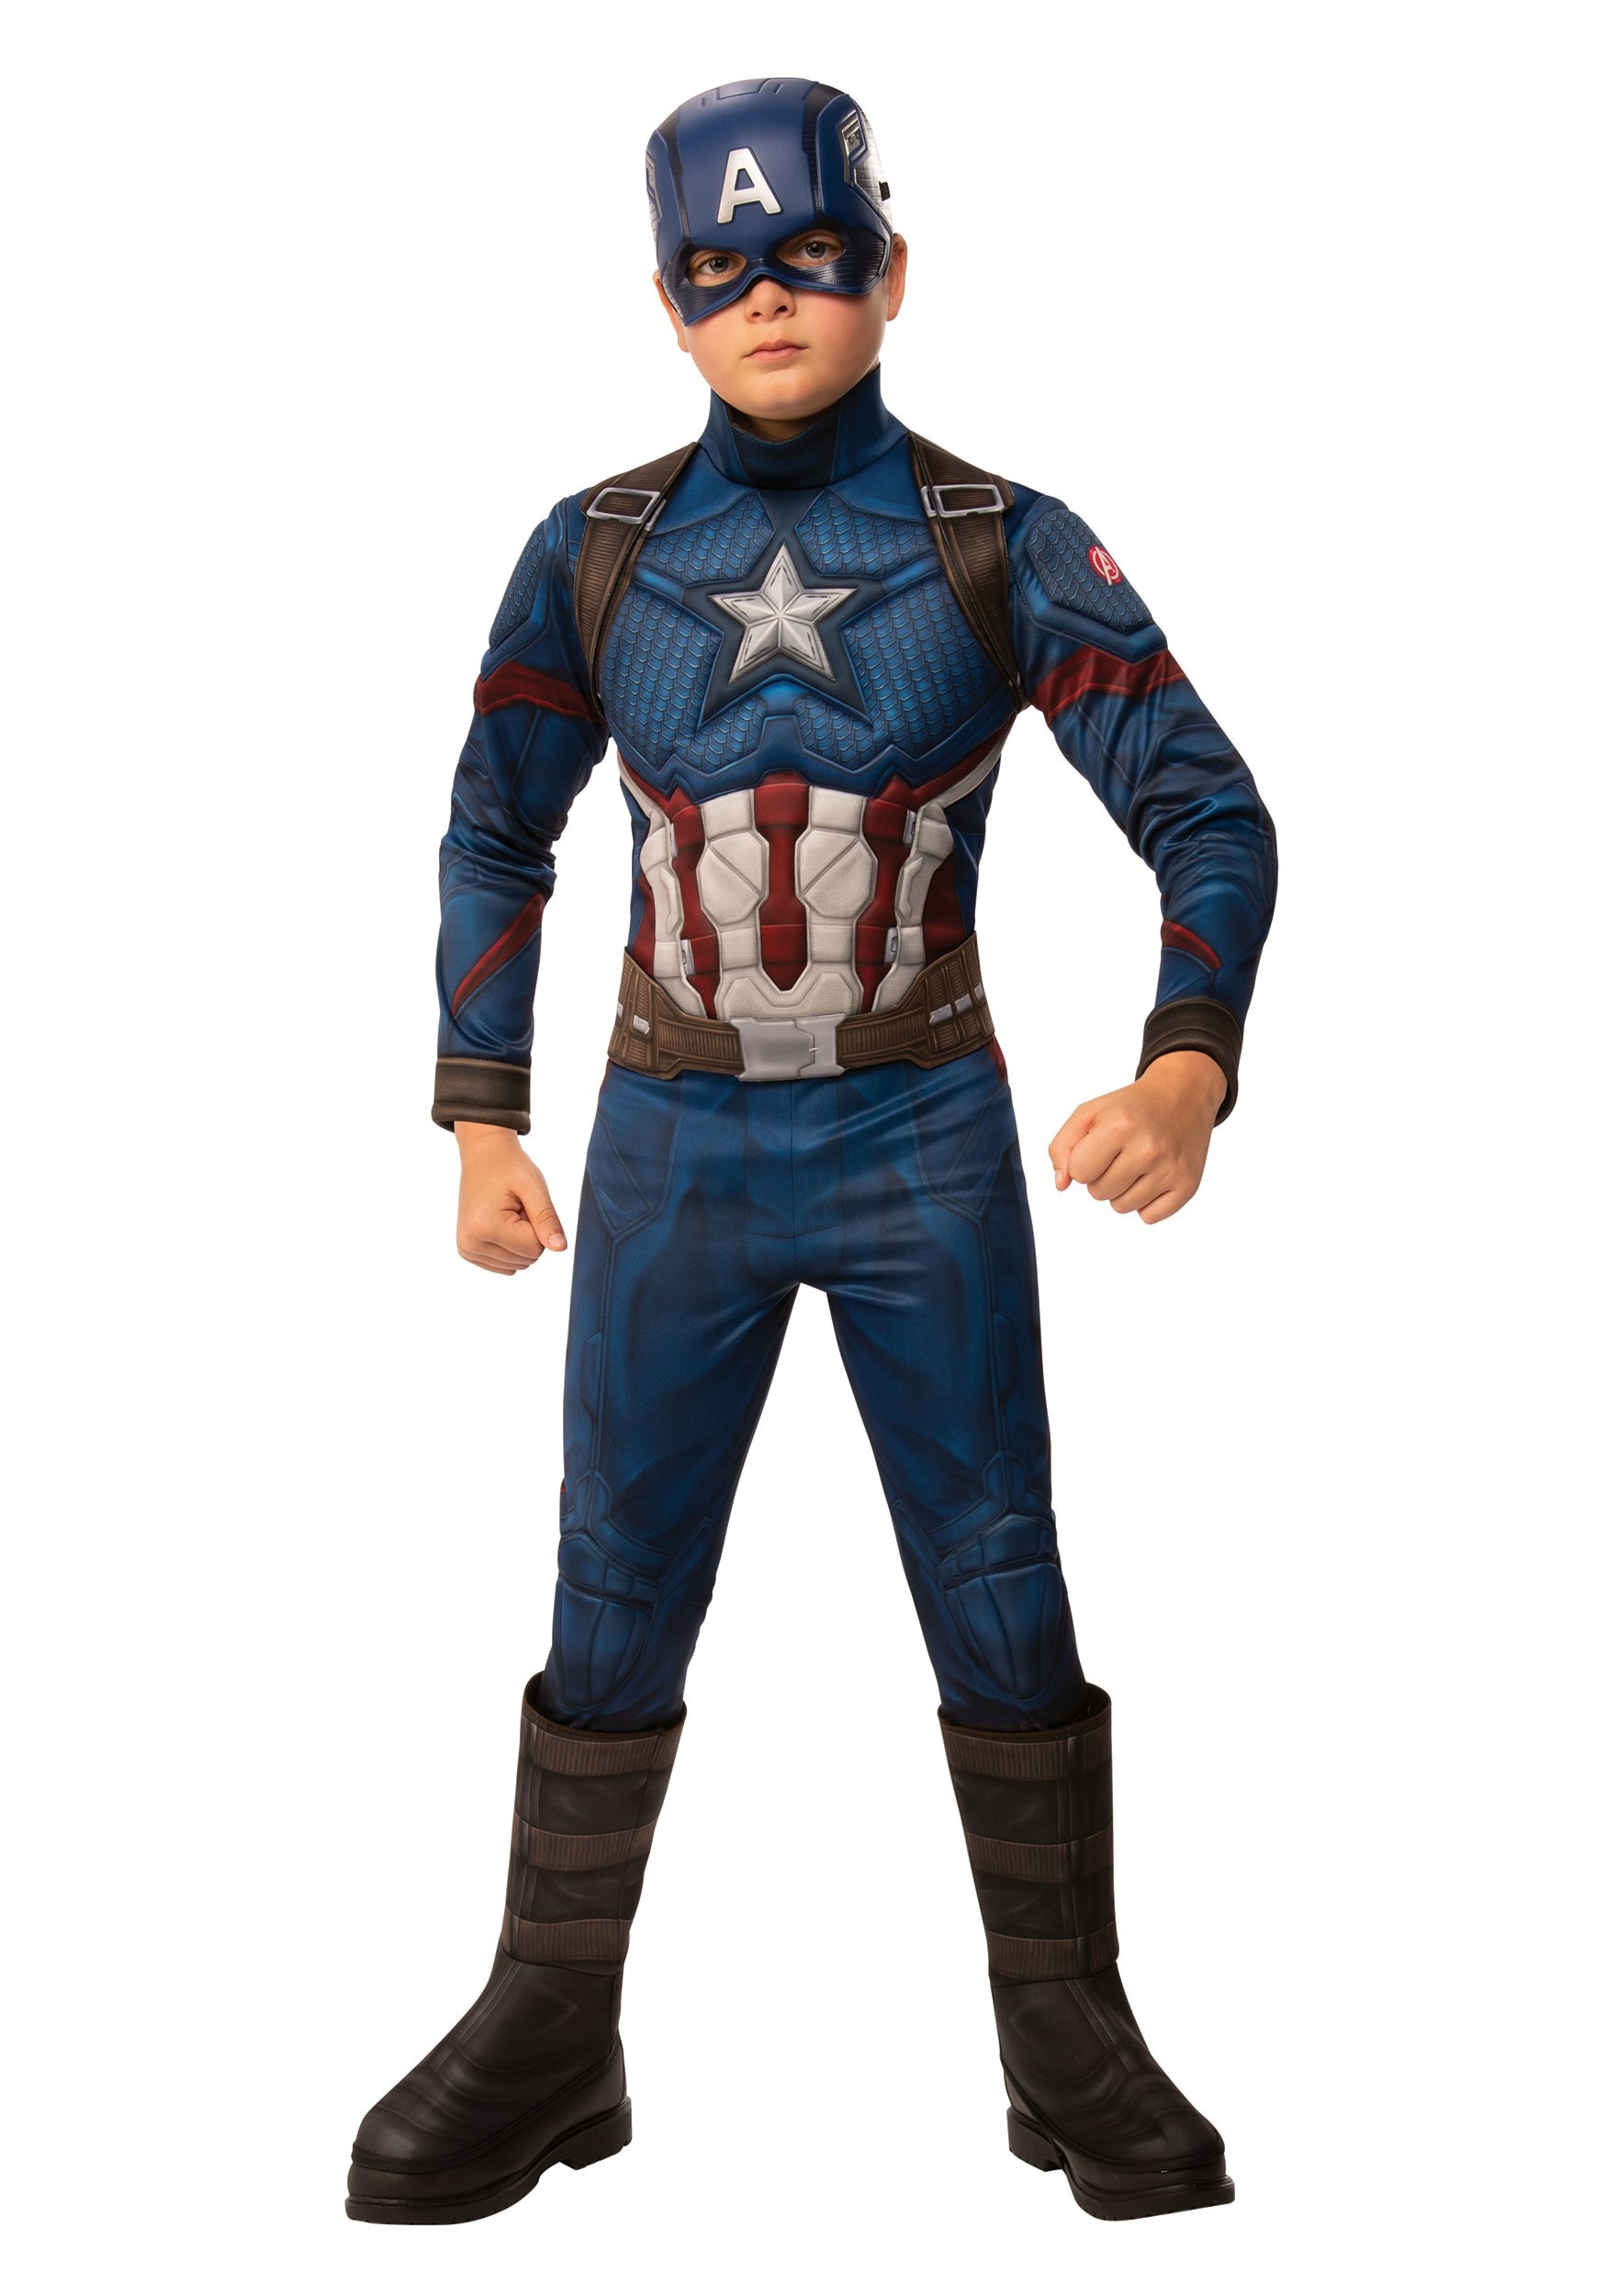 Image of Marvel Avengers Endgame Boys Captain America Deluxe Costume ID RU700668-S